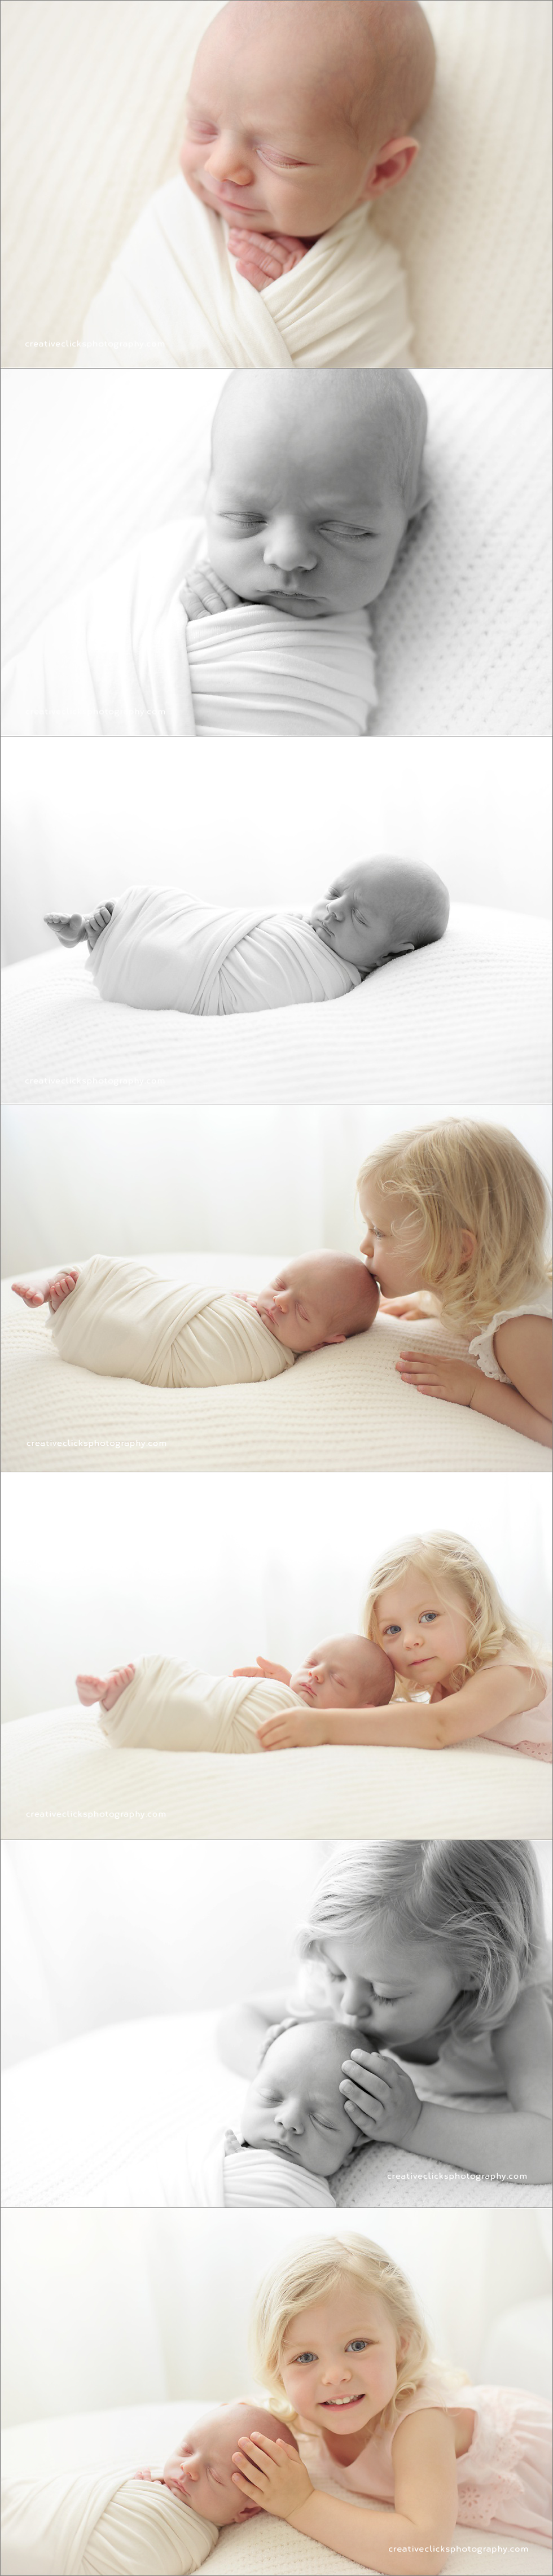 natural newborn sibling kissing newborn baby